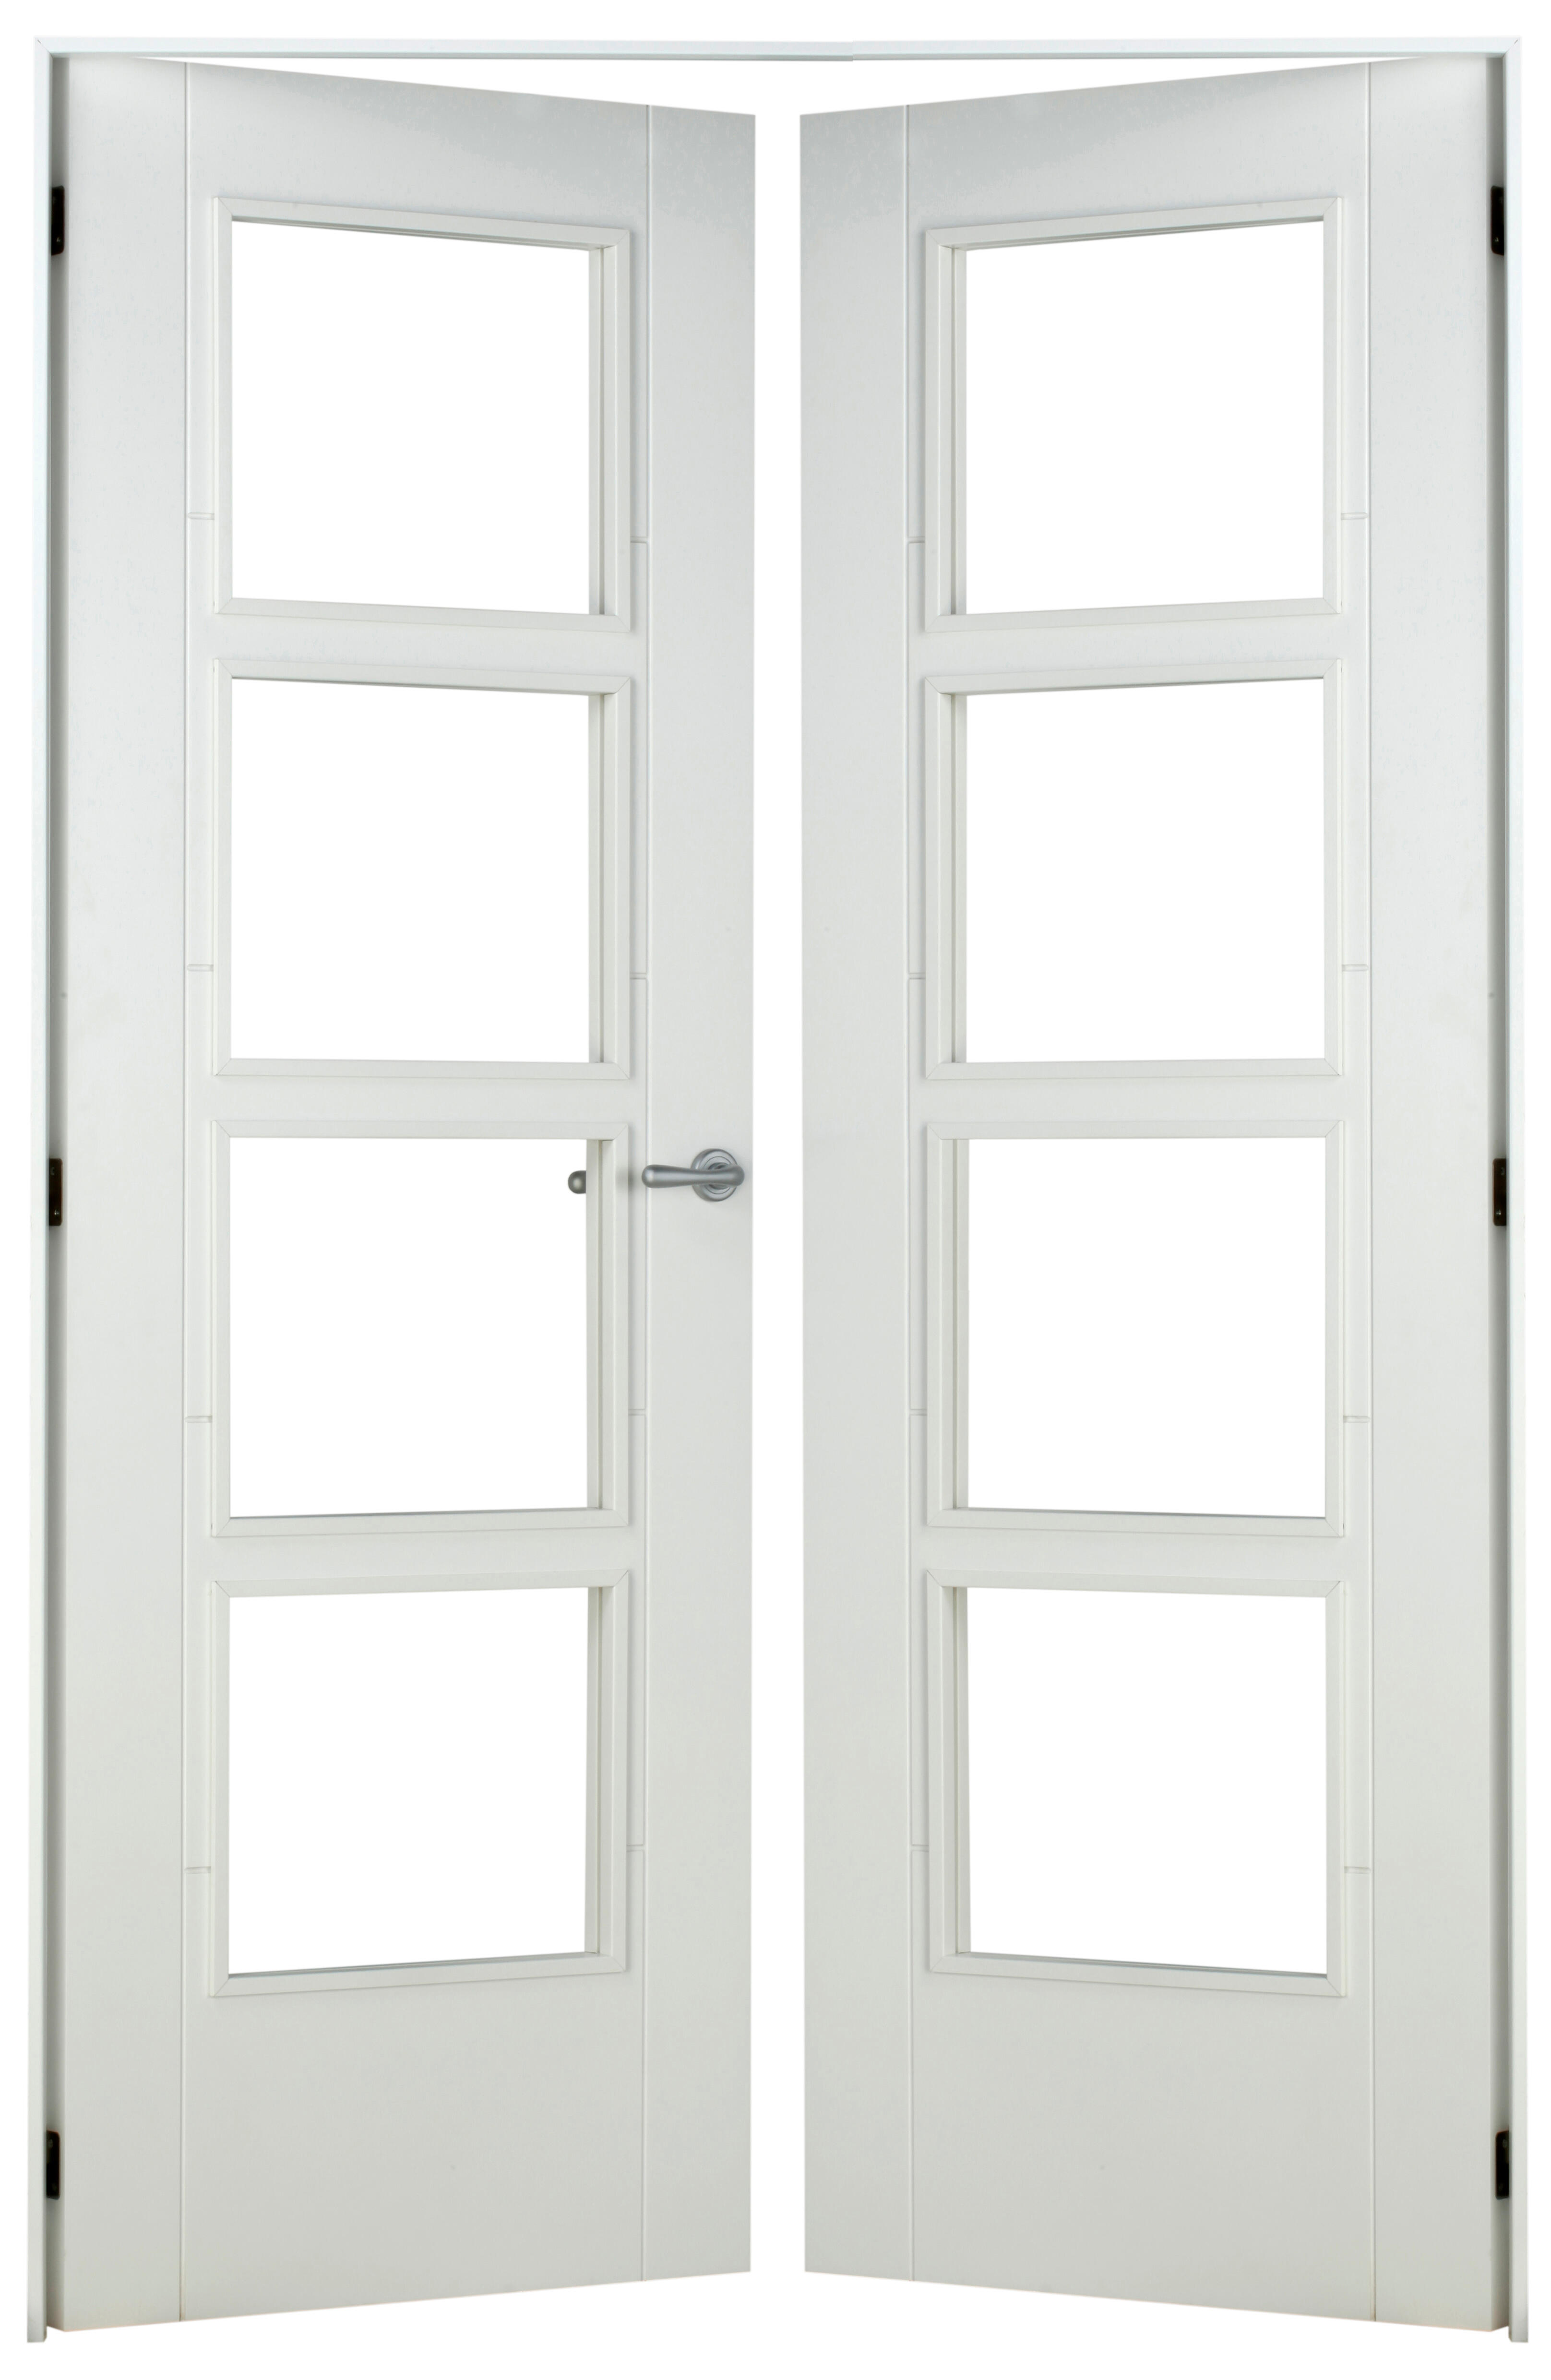 Puerta abatible noruega blanca line plus con cristal blanco izquierda de 125